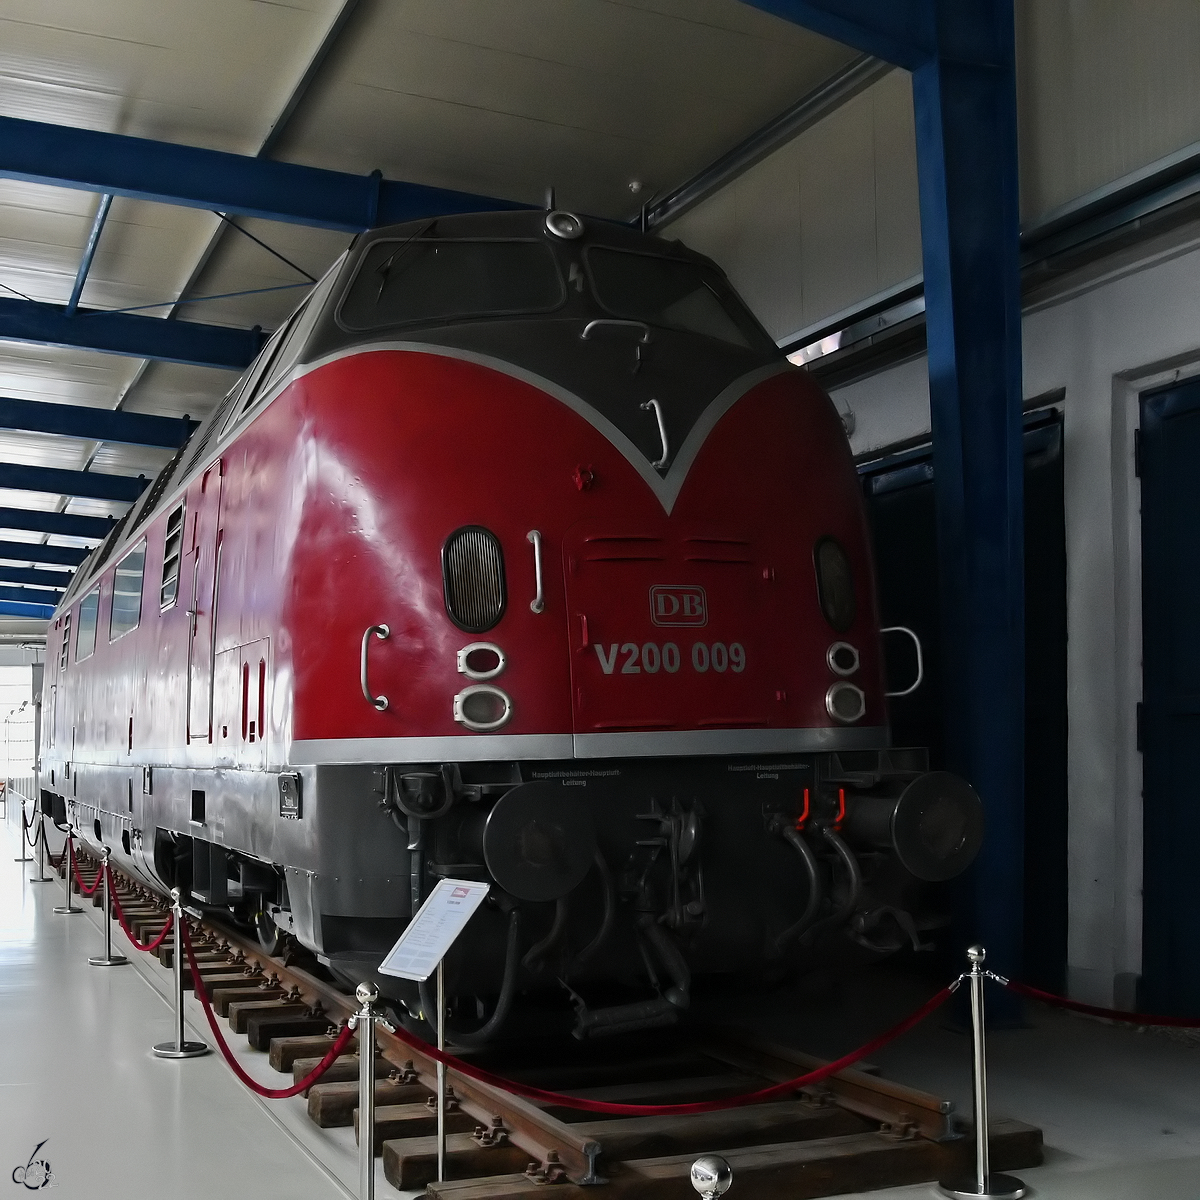 Die Diesellokomotive V200 009 wurde 1957 bei MaK in Kiel gebaut und ist aktuell im Oldtimermuseum Prora zu finden. (November 2022)